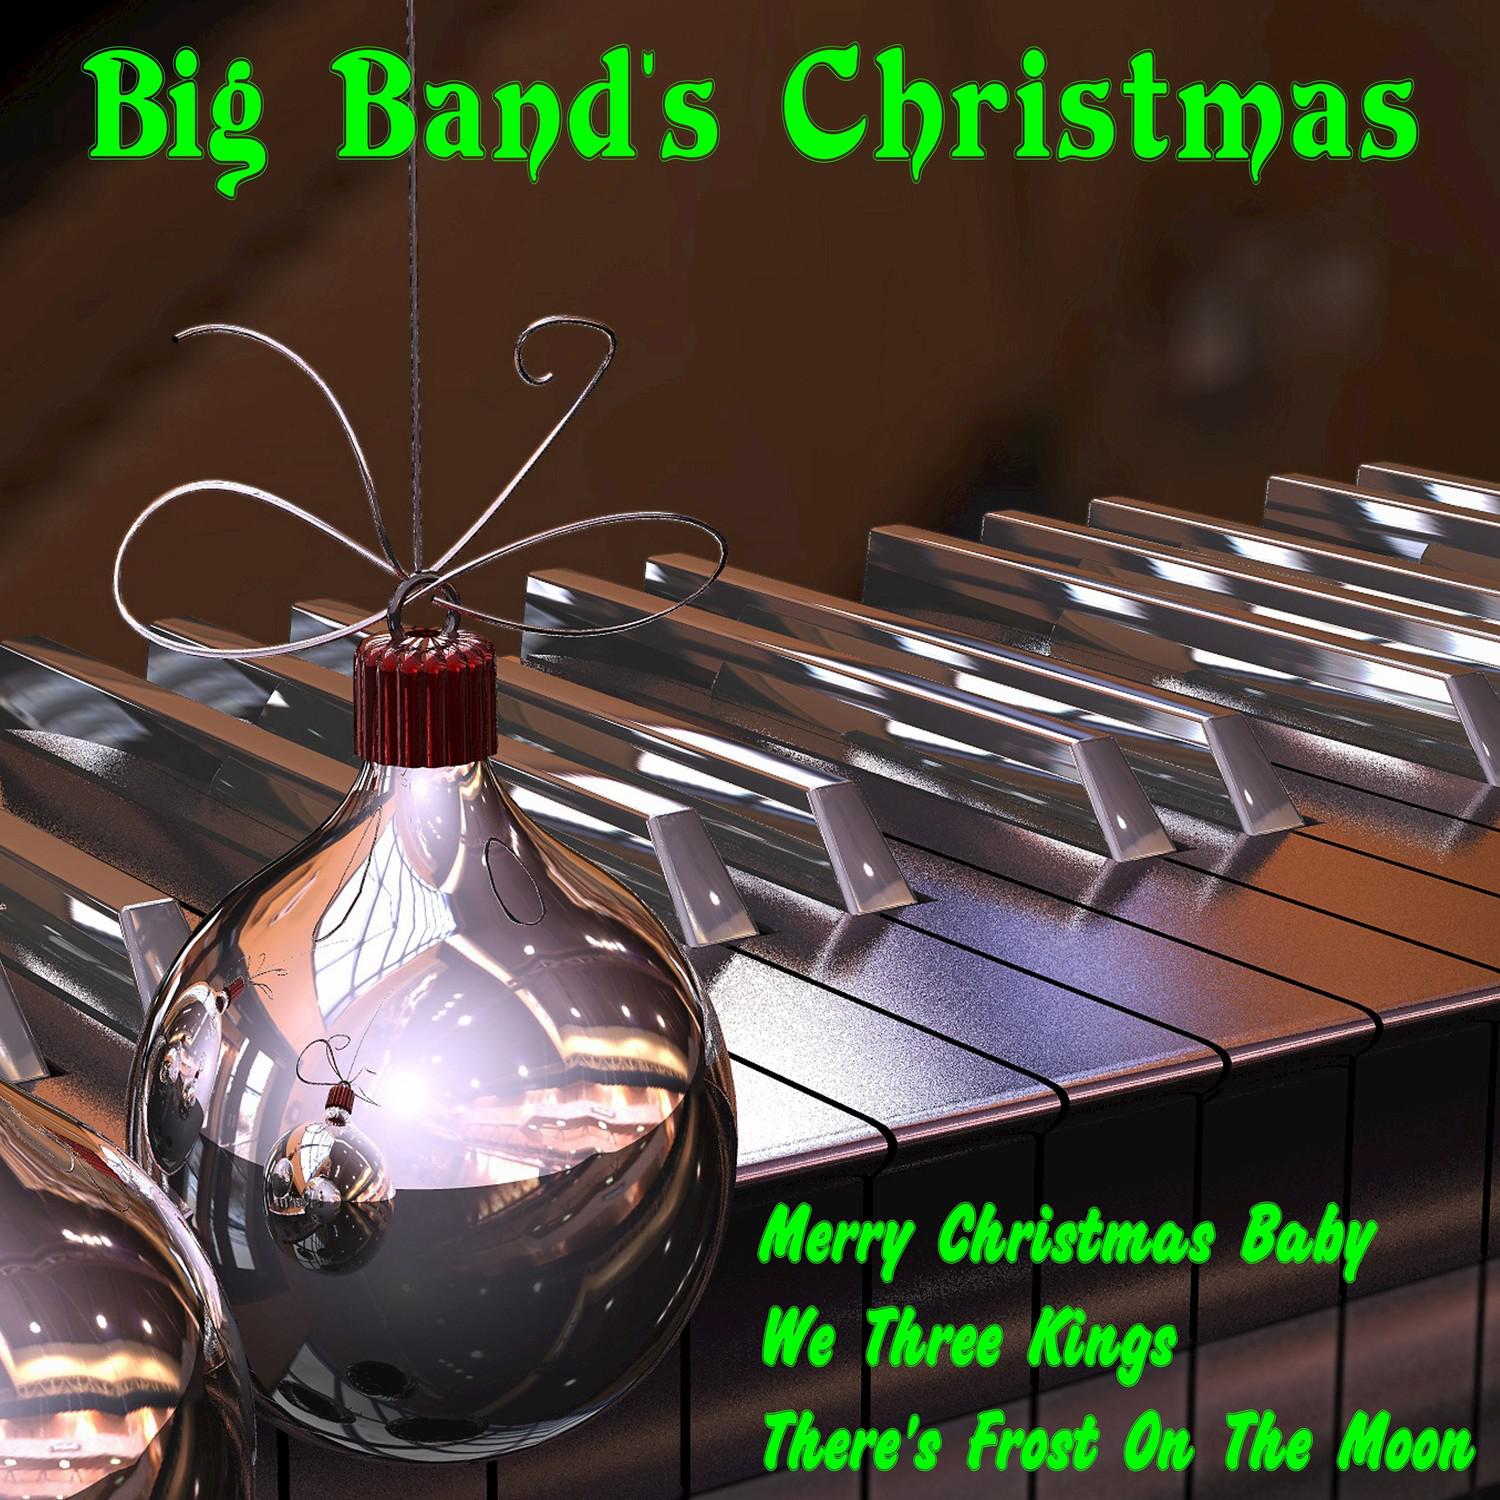 Big Band's Christmas